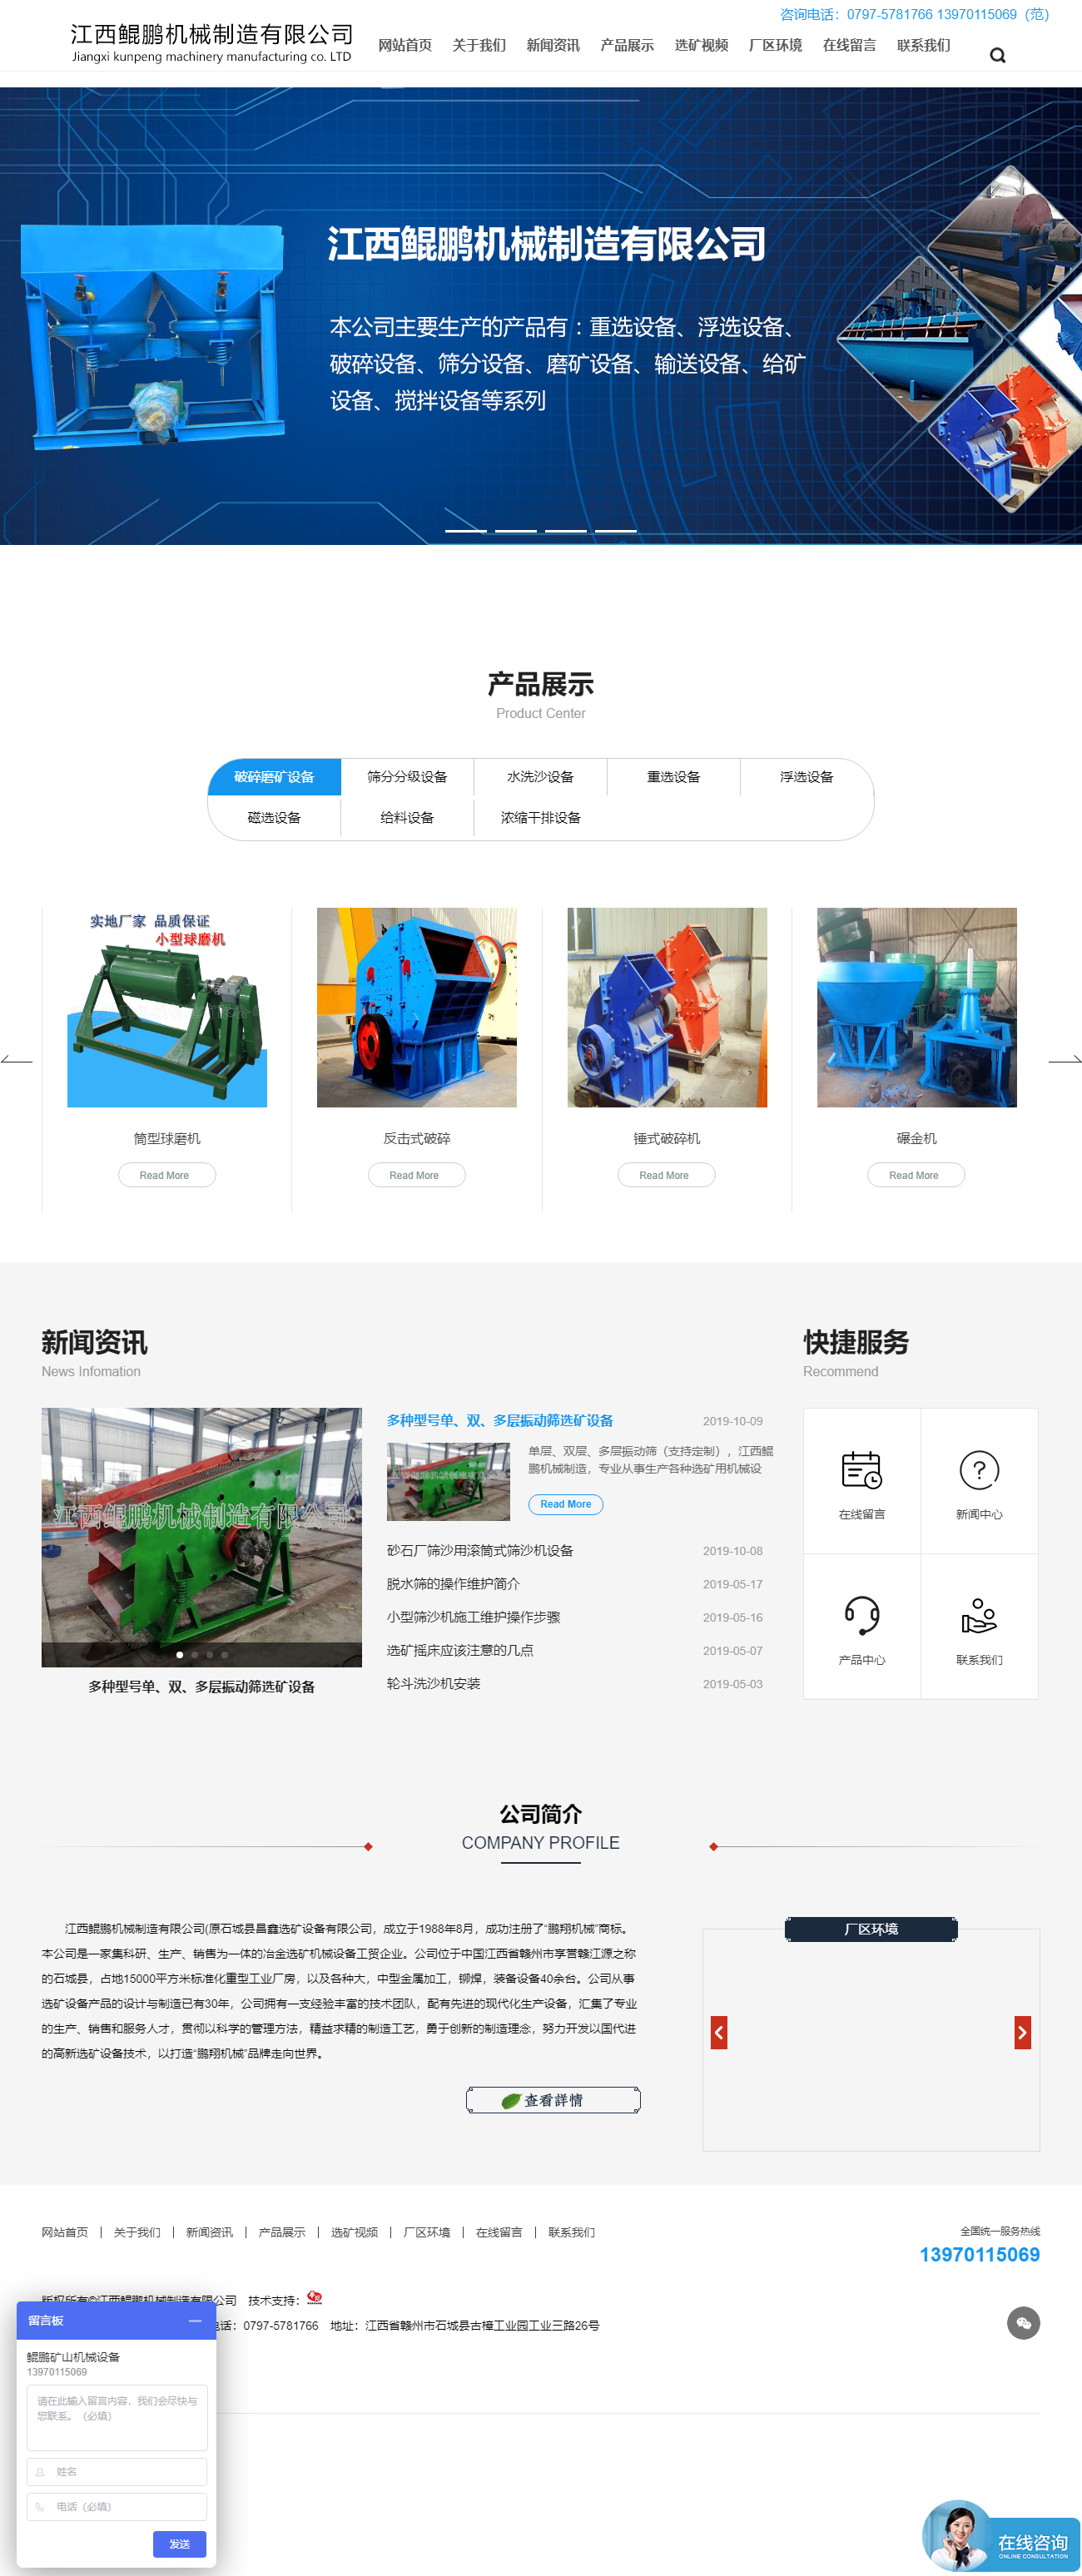 江西鲲鹏机械制造有限公司网站案例